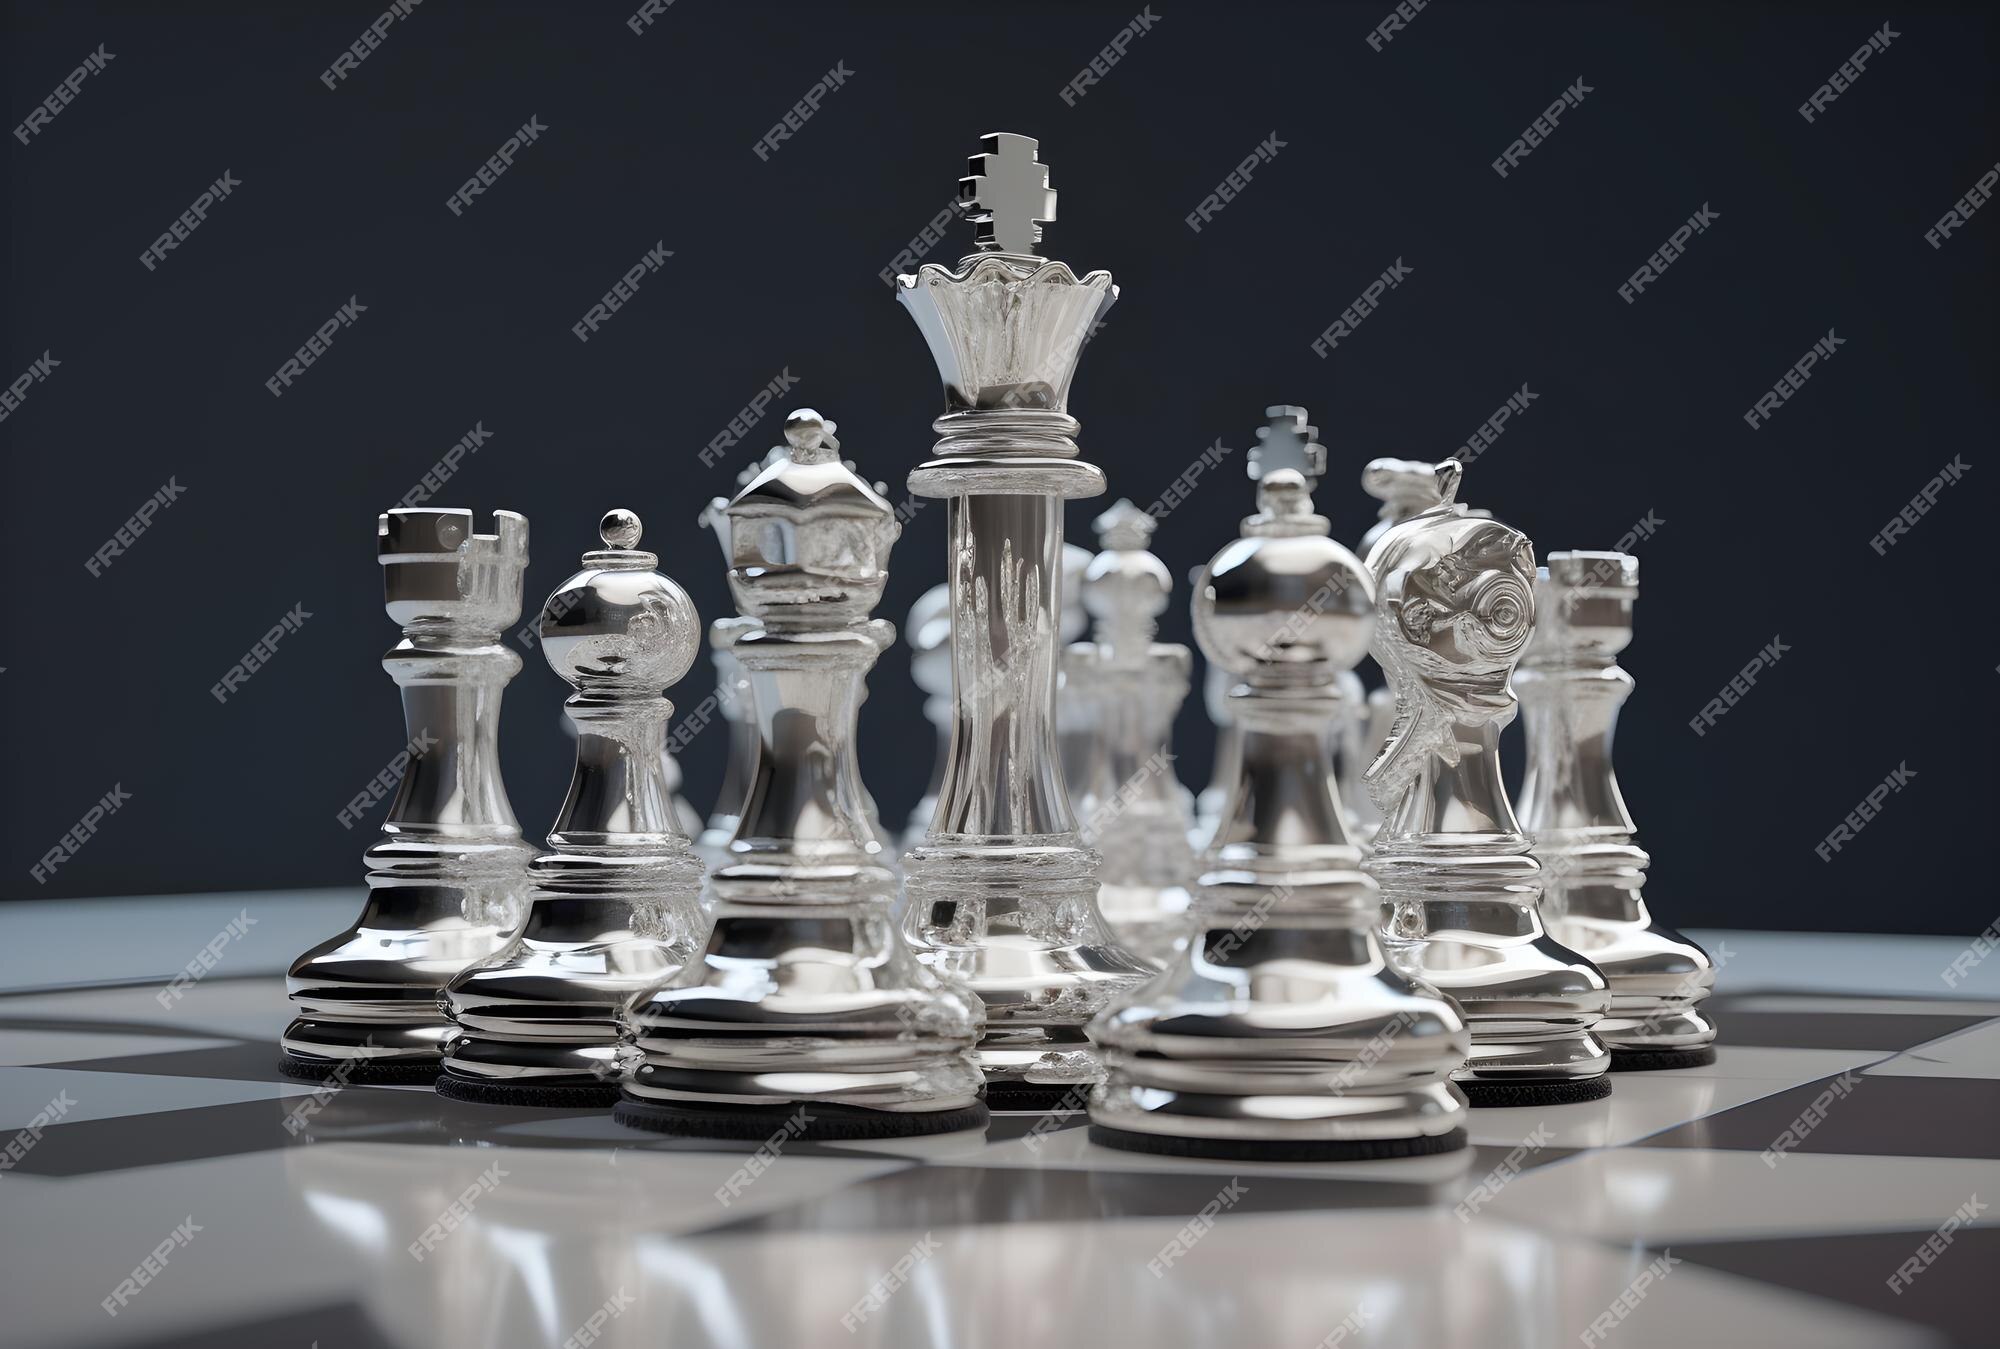 Uma Parte De Xadrez Do Rei E Da Rainha Em Um Tabuleiro De Xadrez De Vidro  Foto de Stock - Imagem de estratégia, potência: 110522828